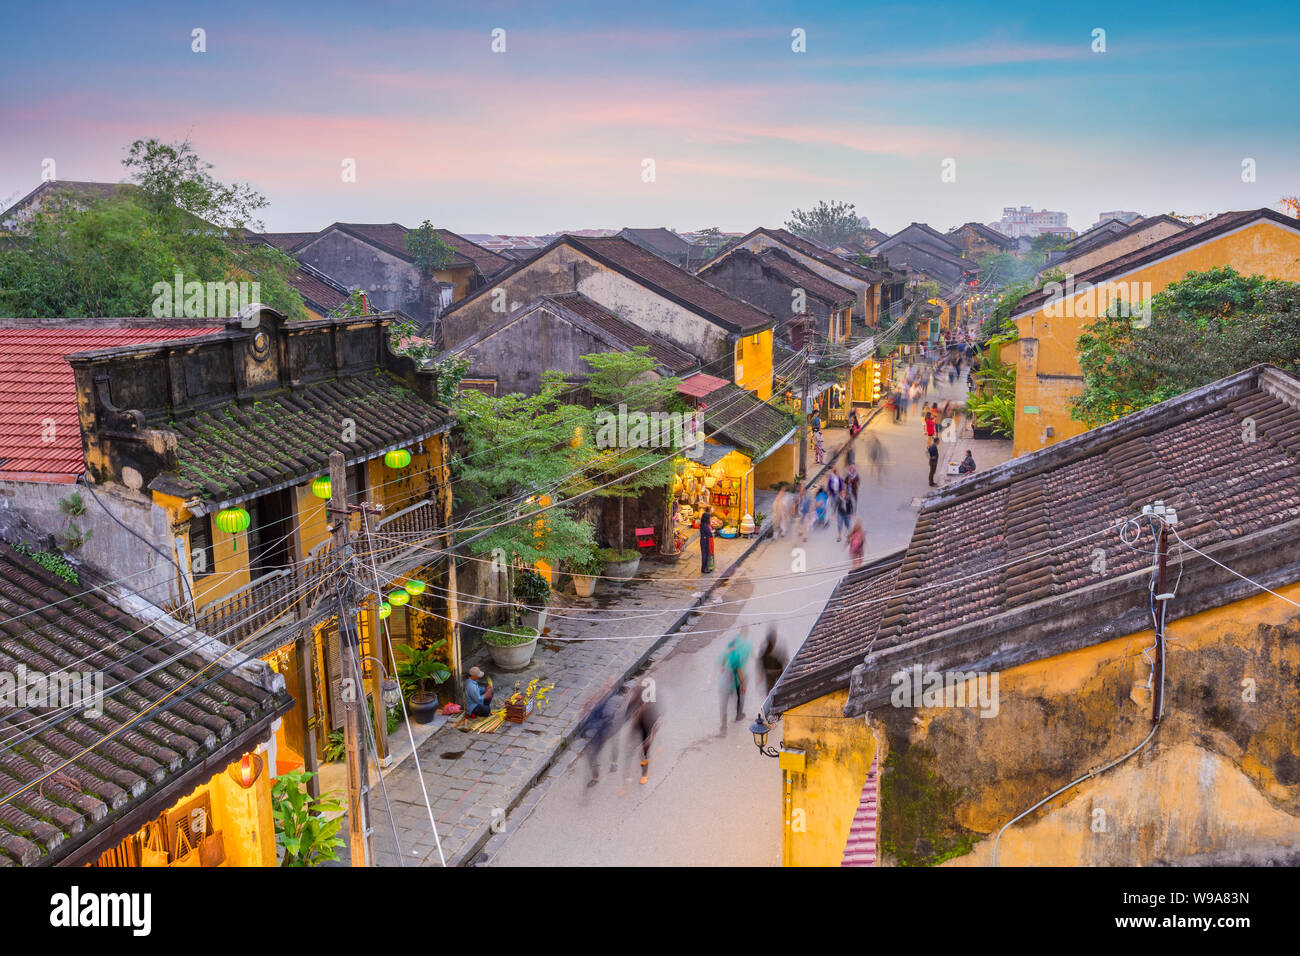 La rue de la vieille ville de Hoi An, Vietnam Banque D'Images